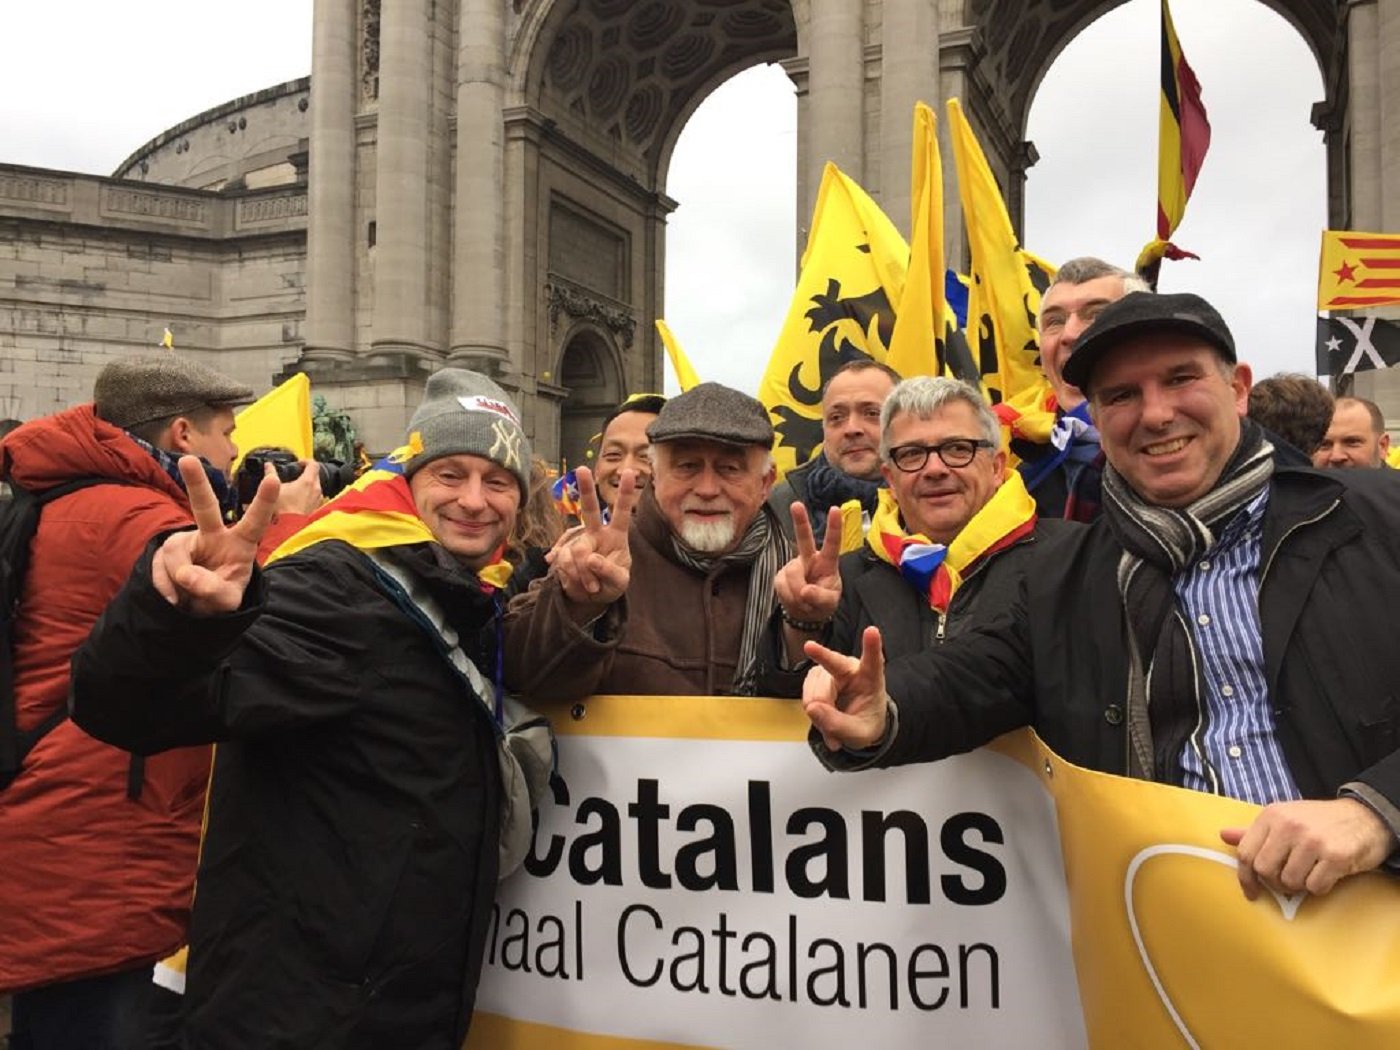 El president del Parlament flamenc: "Puigdemont no és un criminal, és el president"